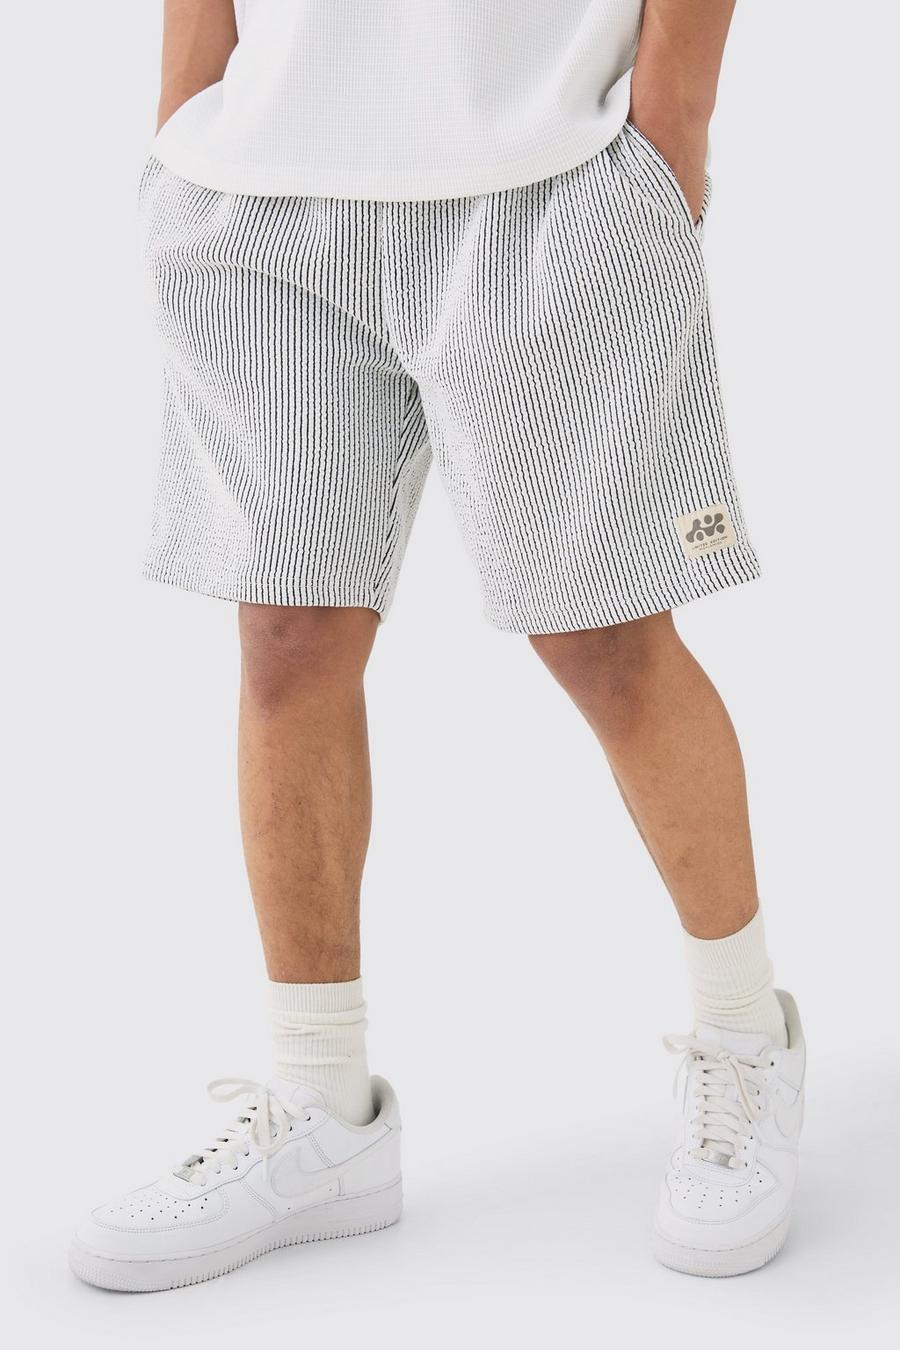 Pantalón corto holgado texturizado de largo medio con etiqueta de tela, White